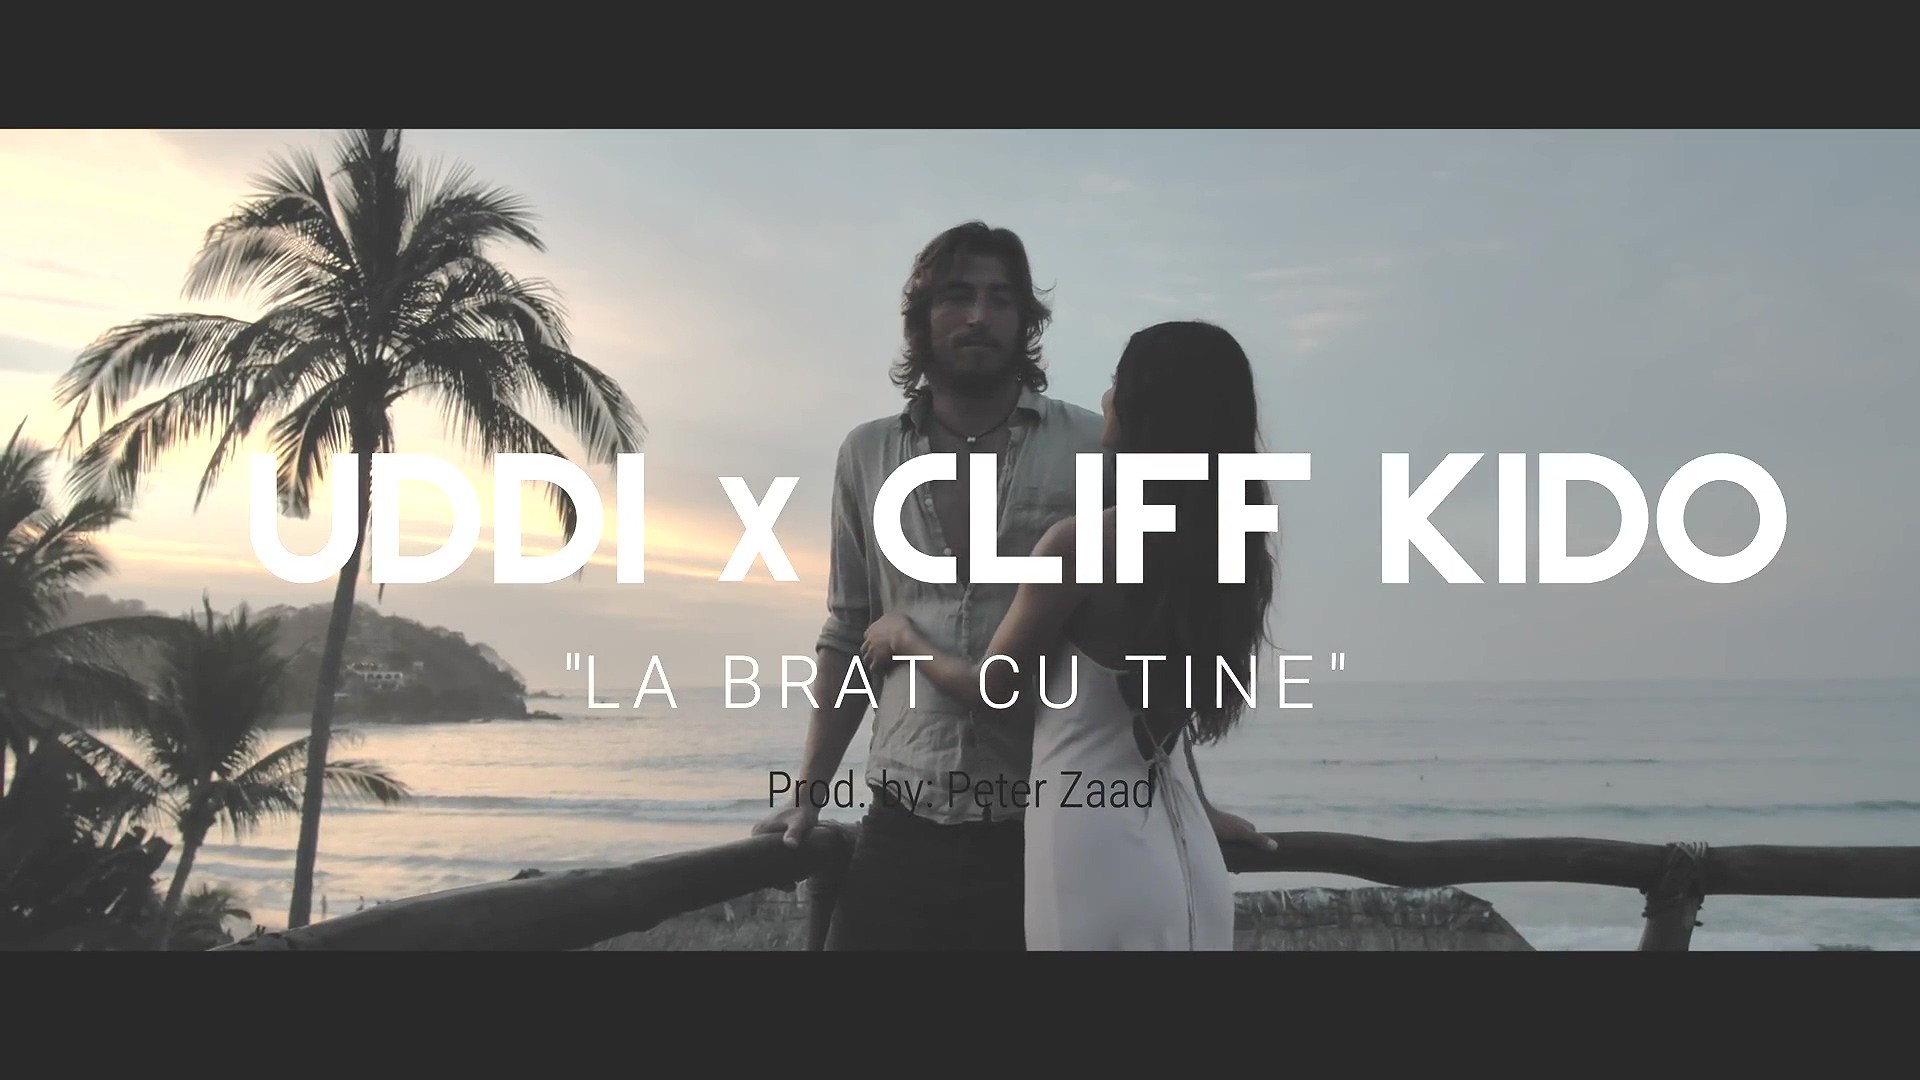 UDDI x Cliff Kido – La brat cu tine